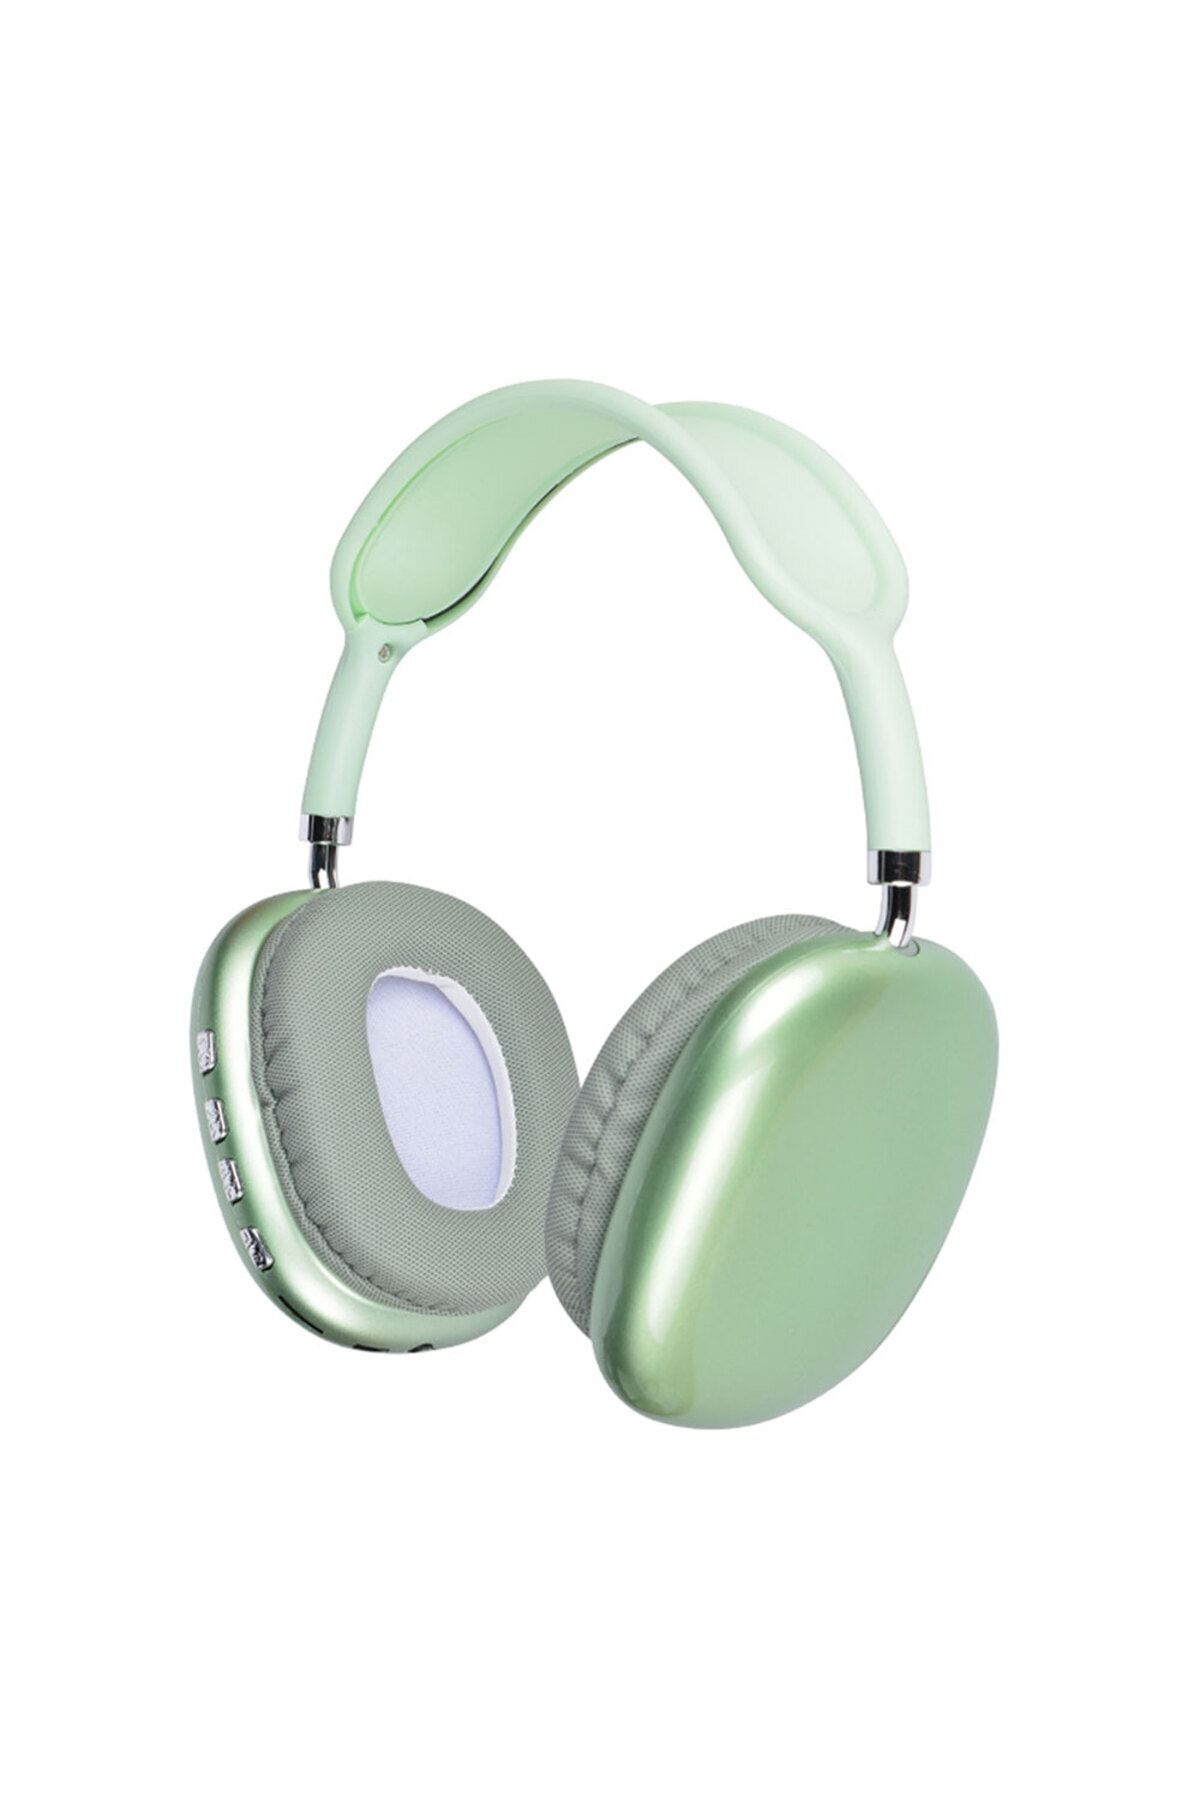 Fibaks P9 Hi-fi Ses Kalitesi  Uyumlu  Ayarlanabilir Ve Katlanabilir Kafa Üstü Bluetooth Kulaklık